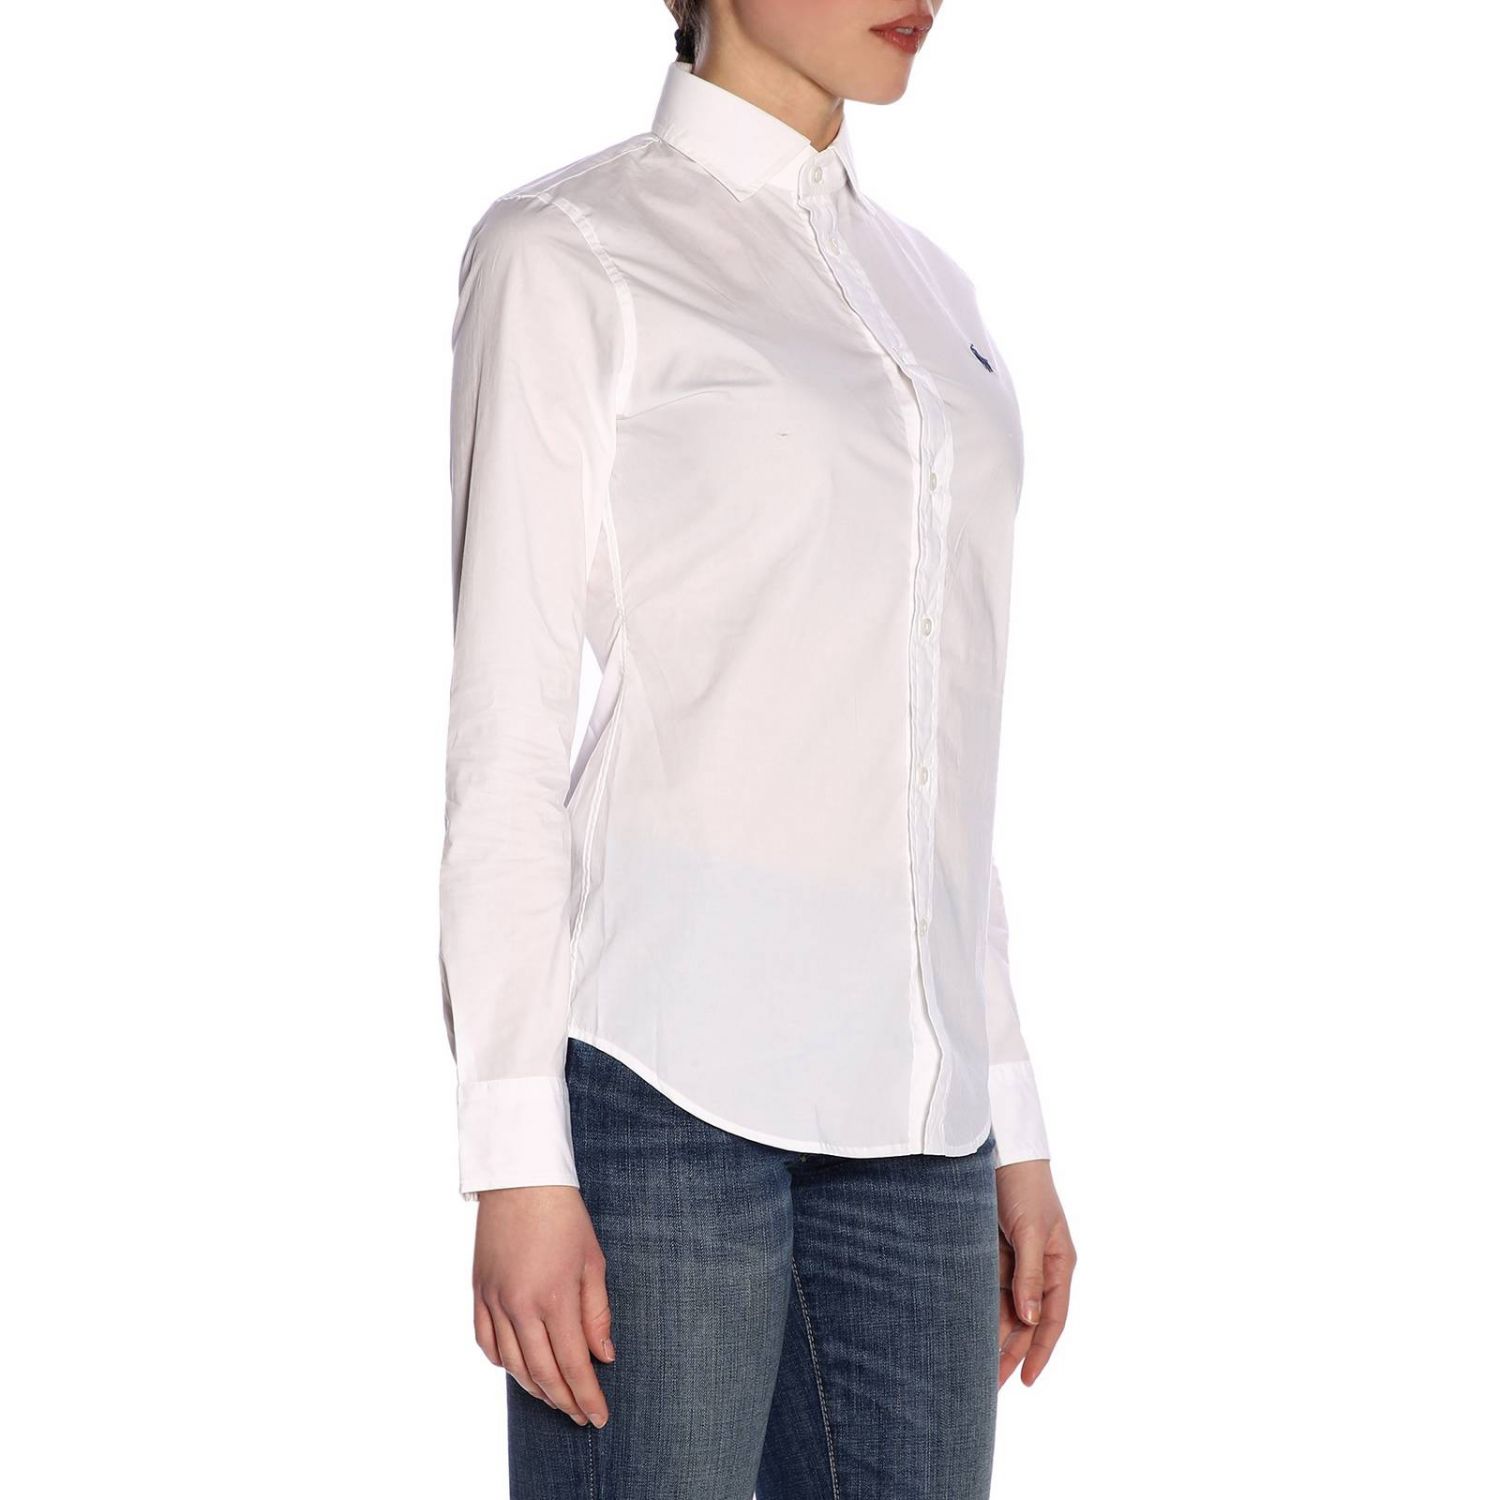 Polo Ralph Lauren Outlet: Shirt women - White | Shirt Polo Ralph Lauren ...